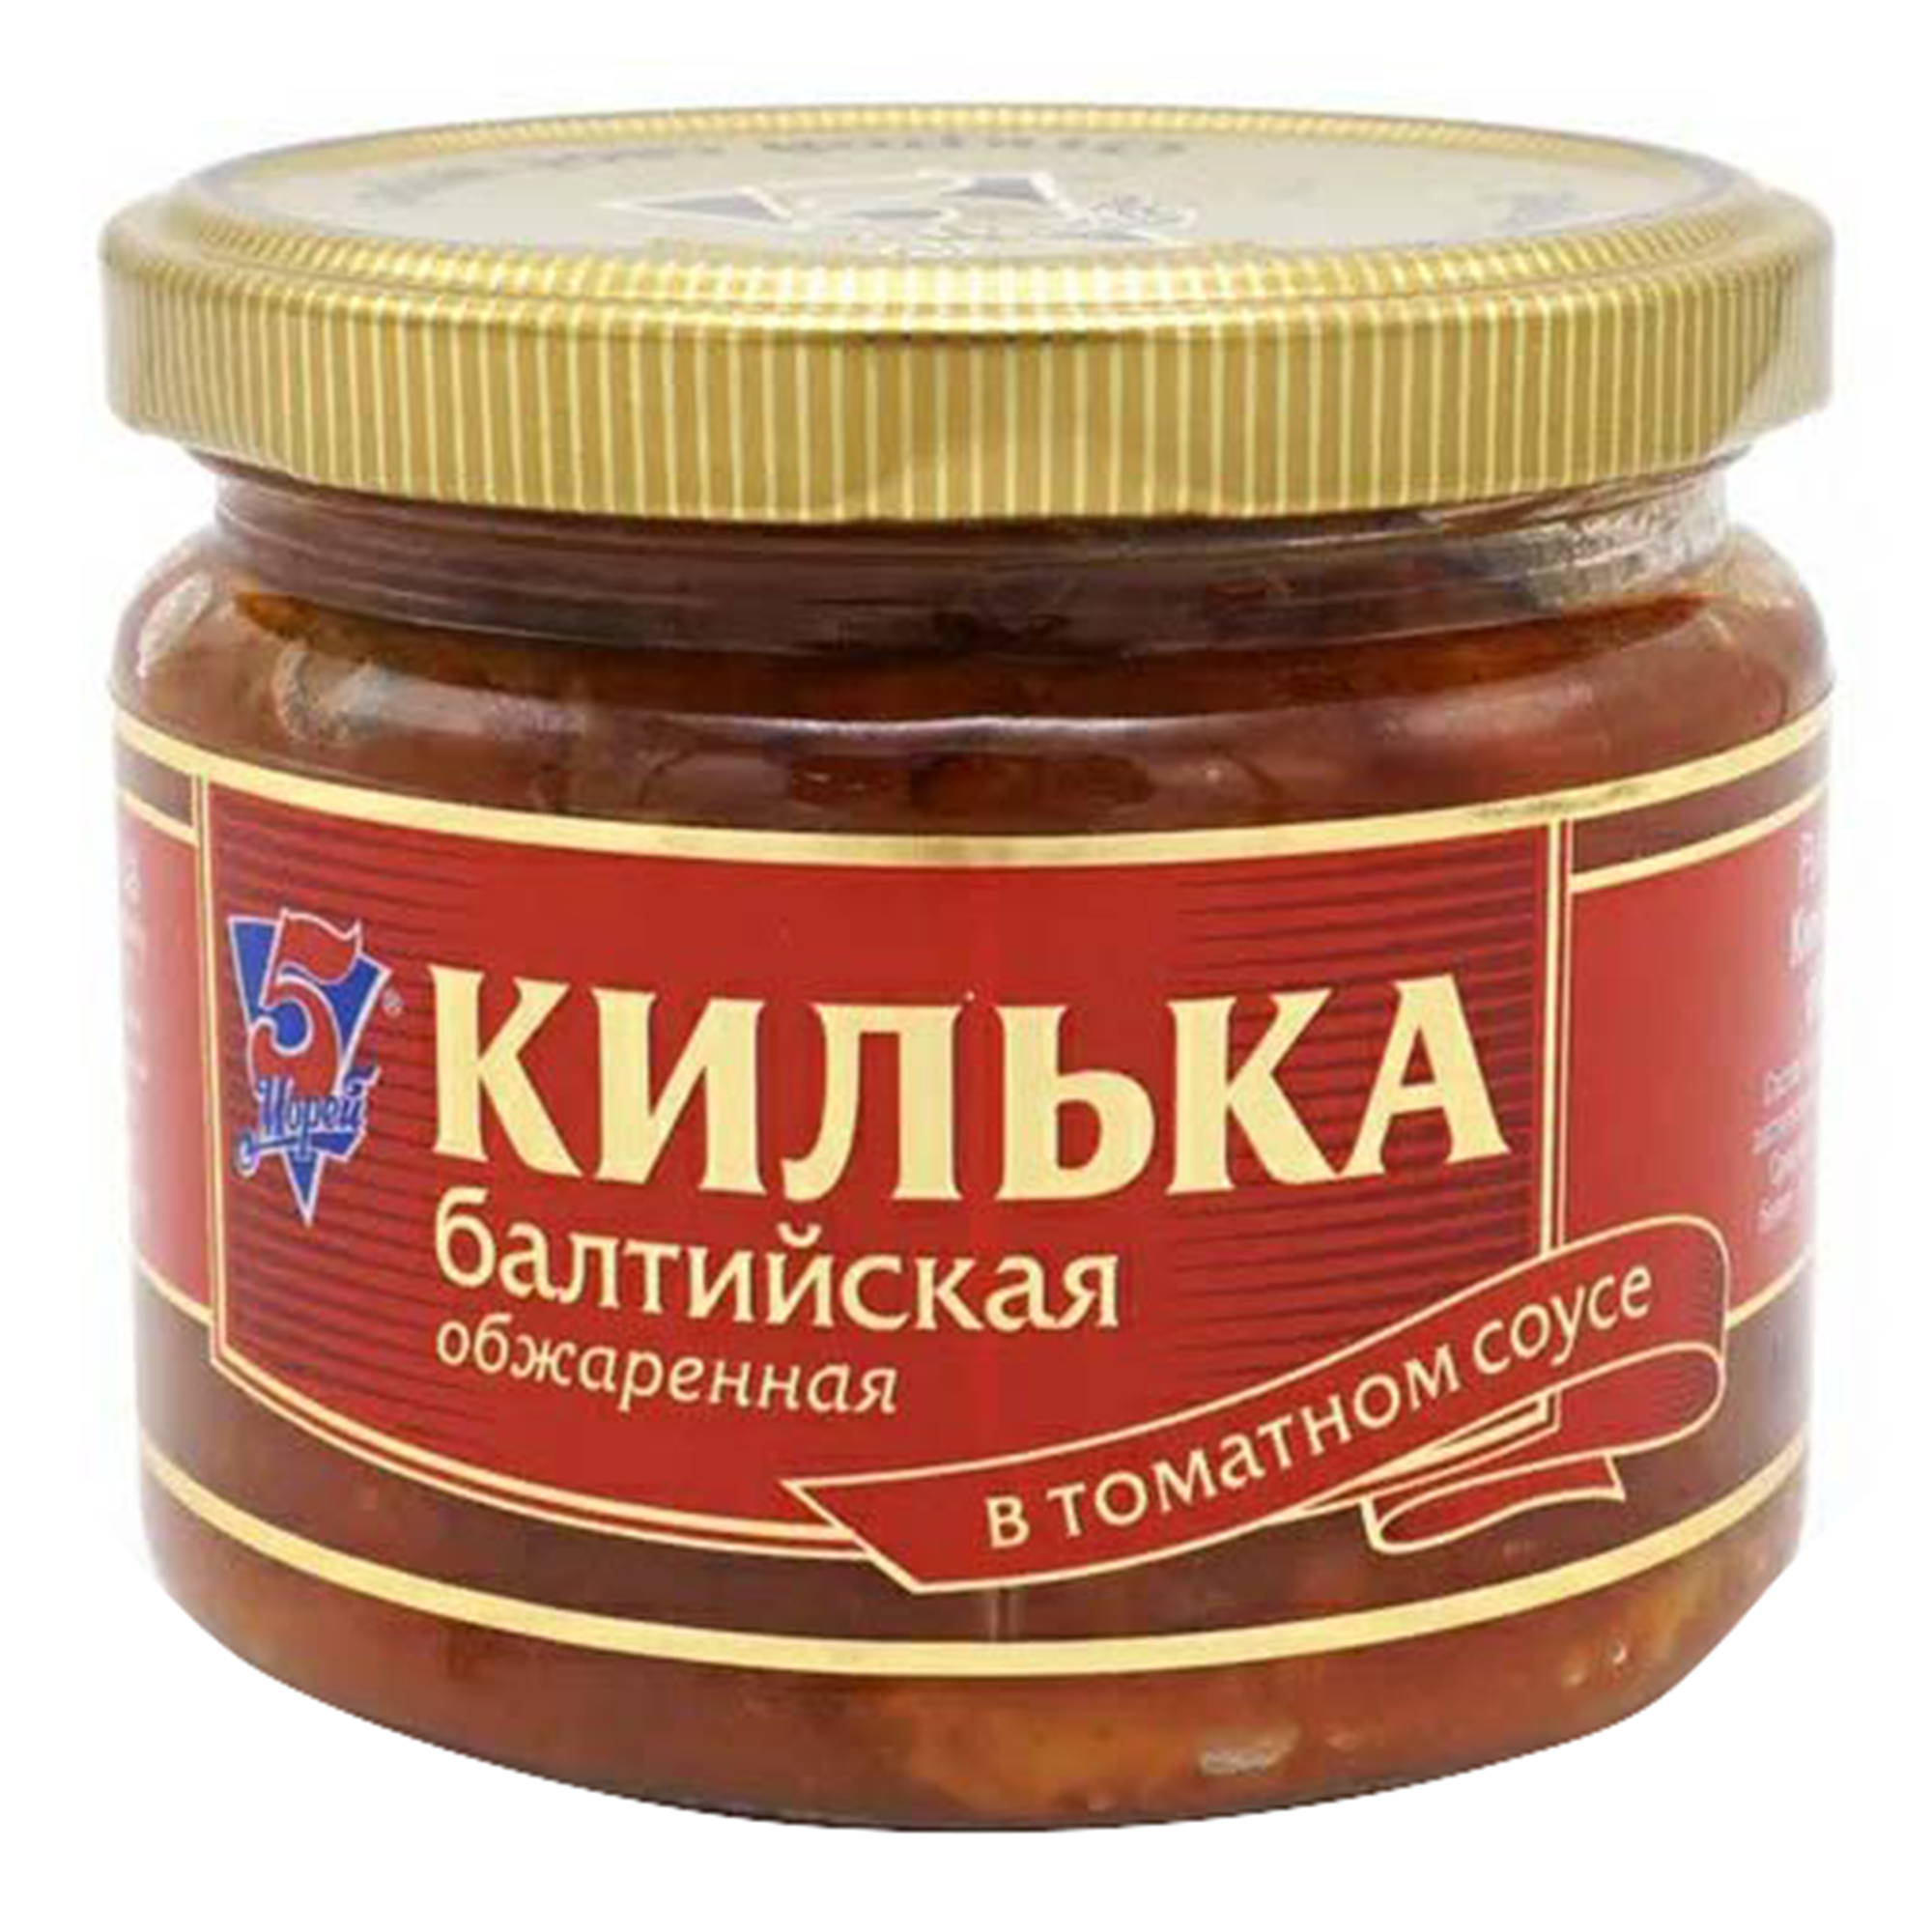 Килька 5 Морей обжаренная, в томатном соусе, 270 г